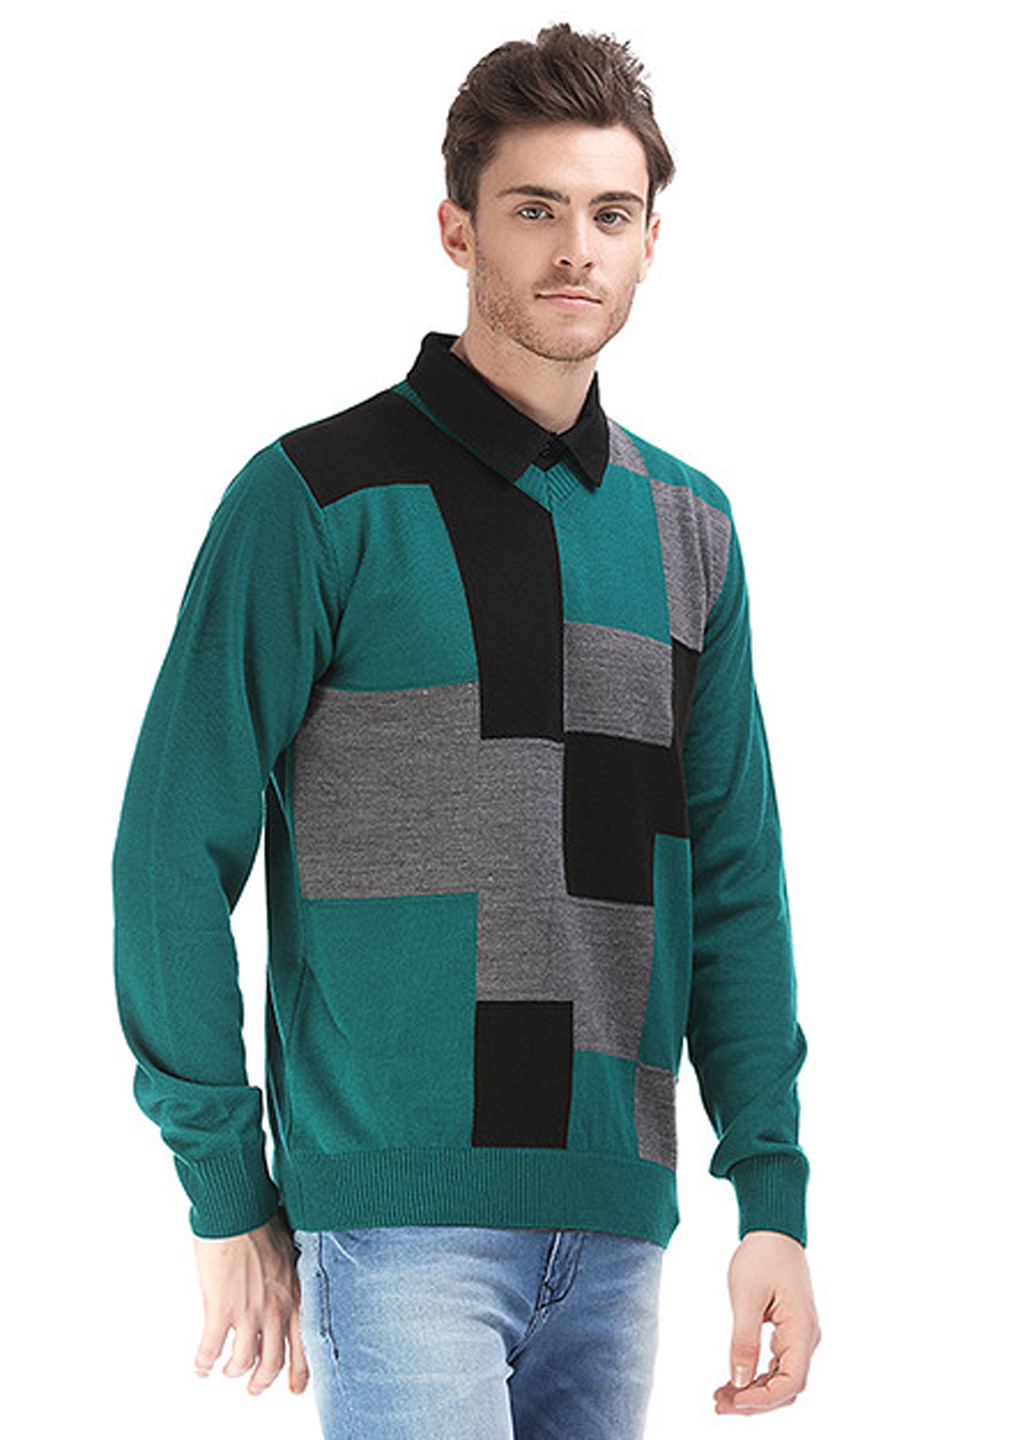 Бледно-зеленый демисезонный пуловер пуловер Яavin